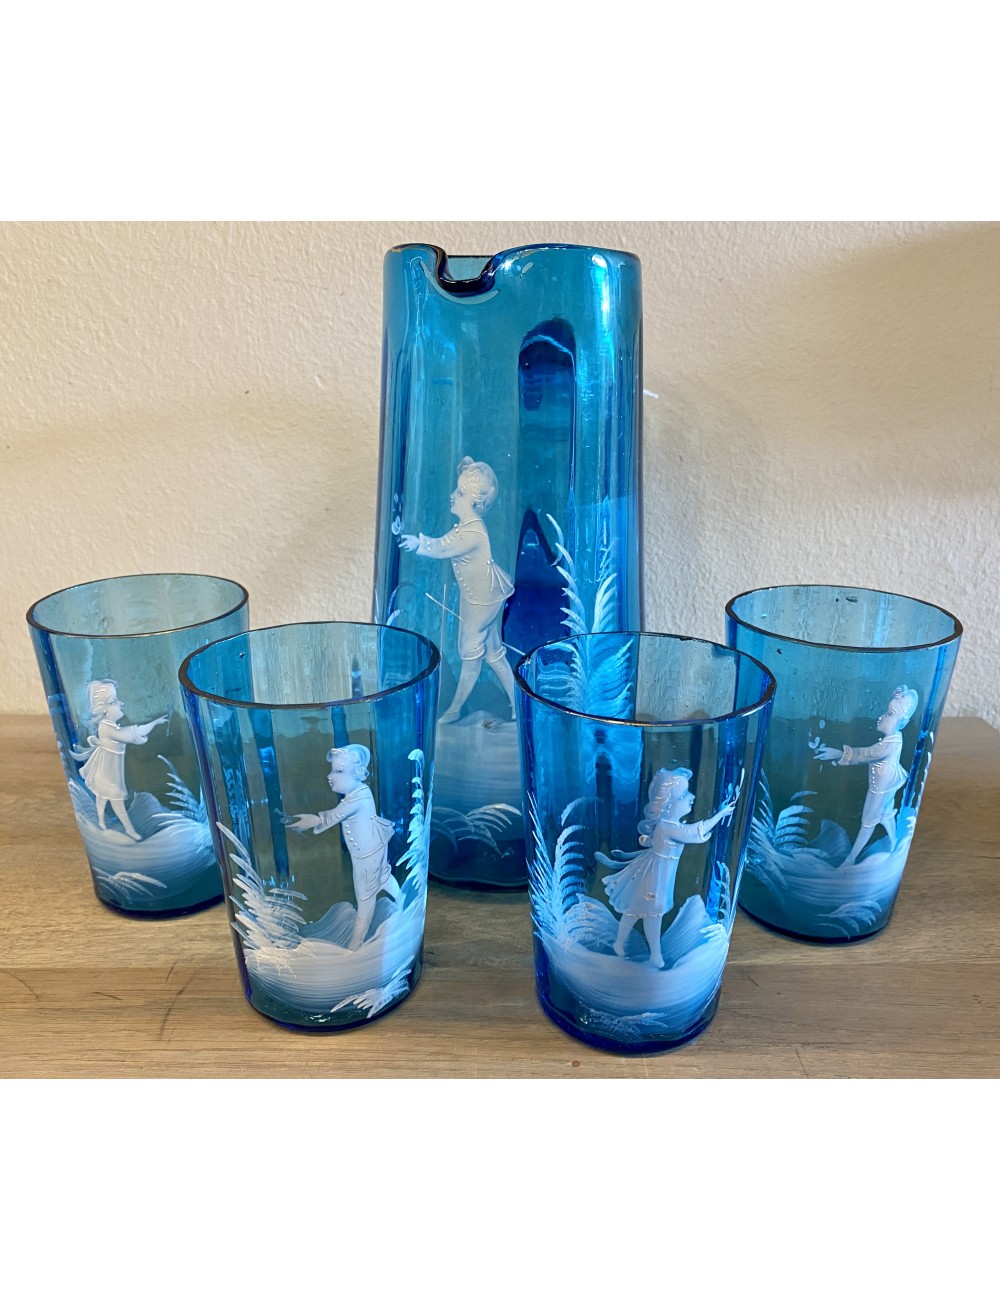 Kan met 4 glazen - azuurblauw glas met Mary Gregory décor in wit - conisch toelopend, geweld glas